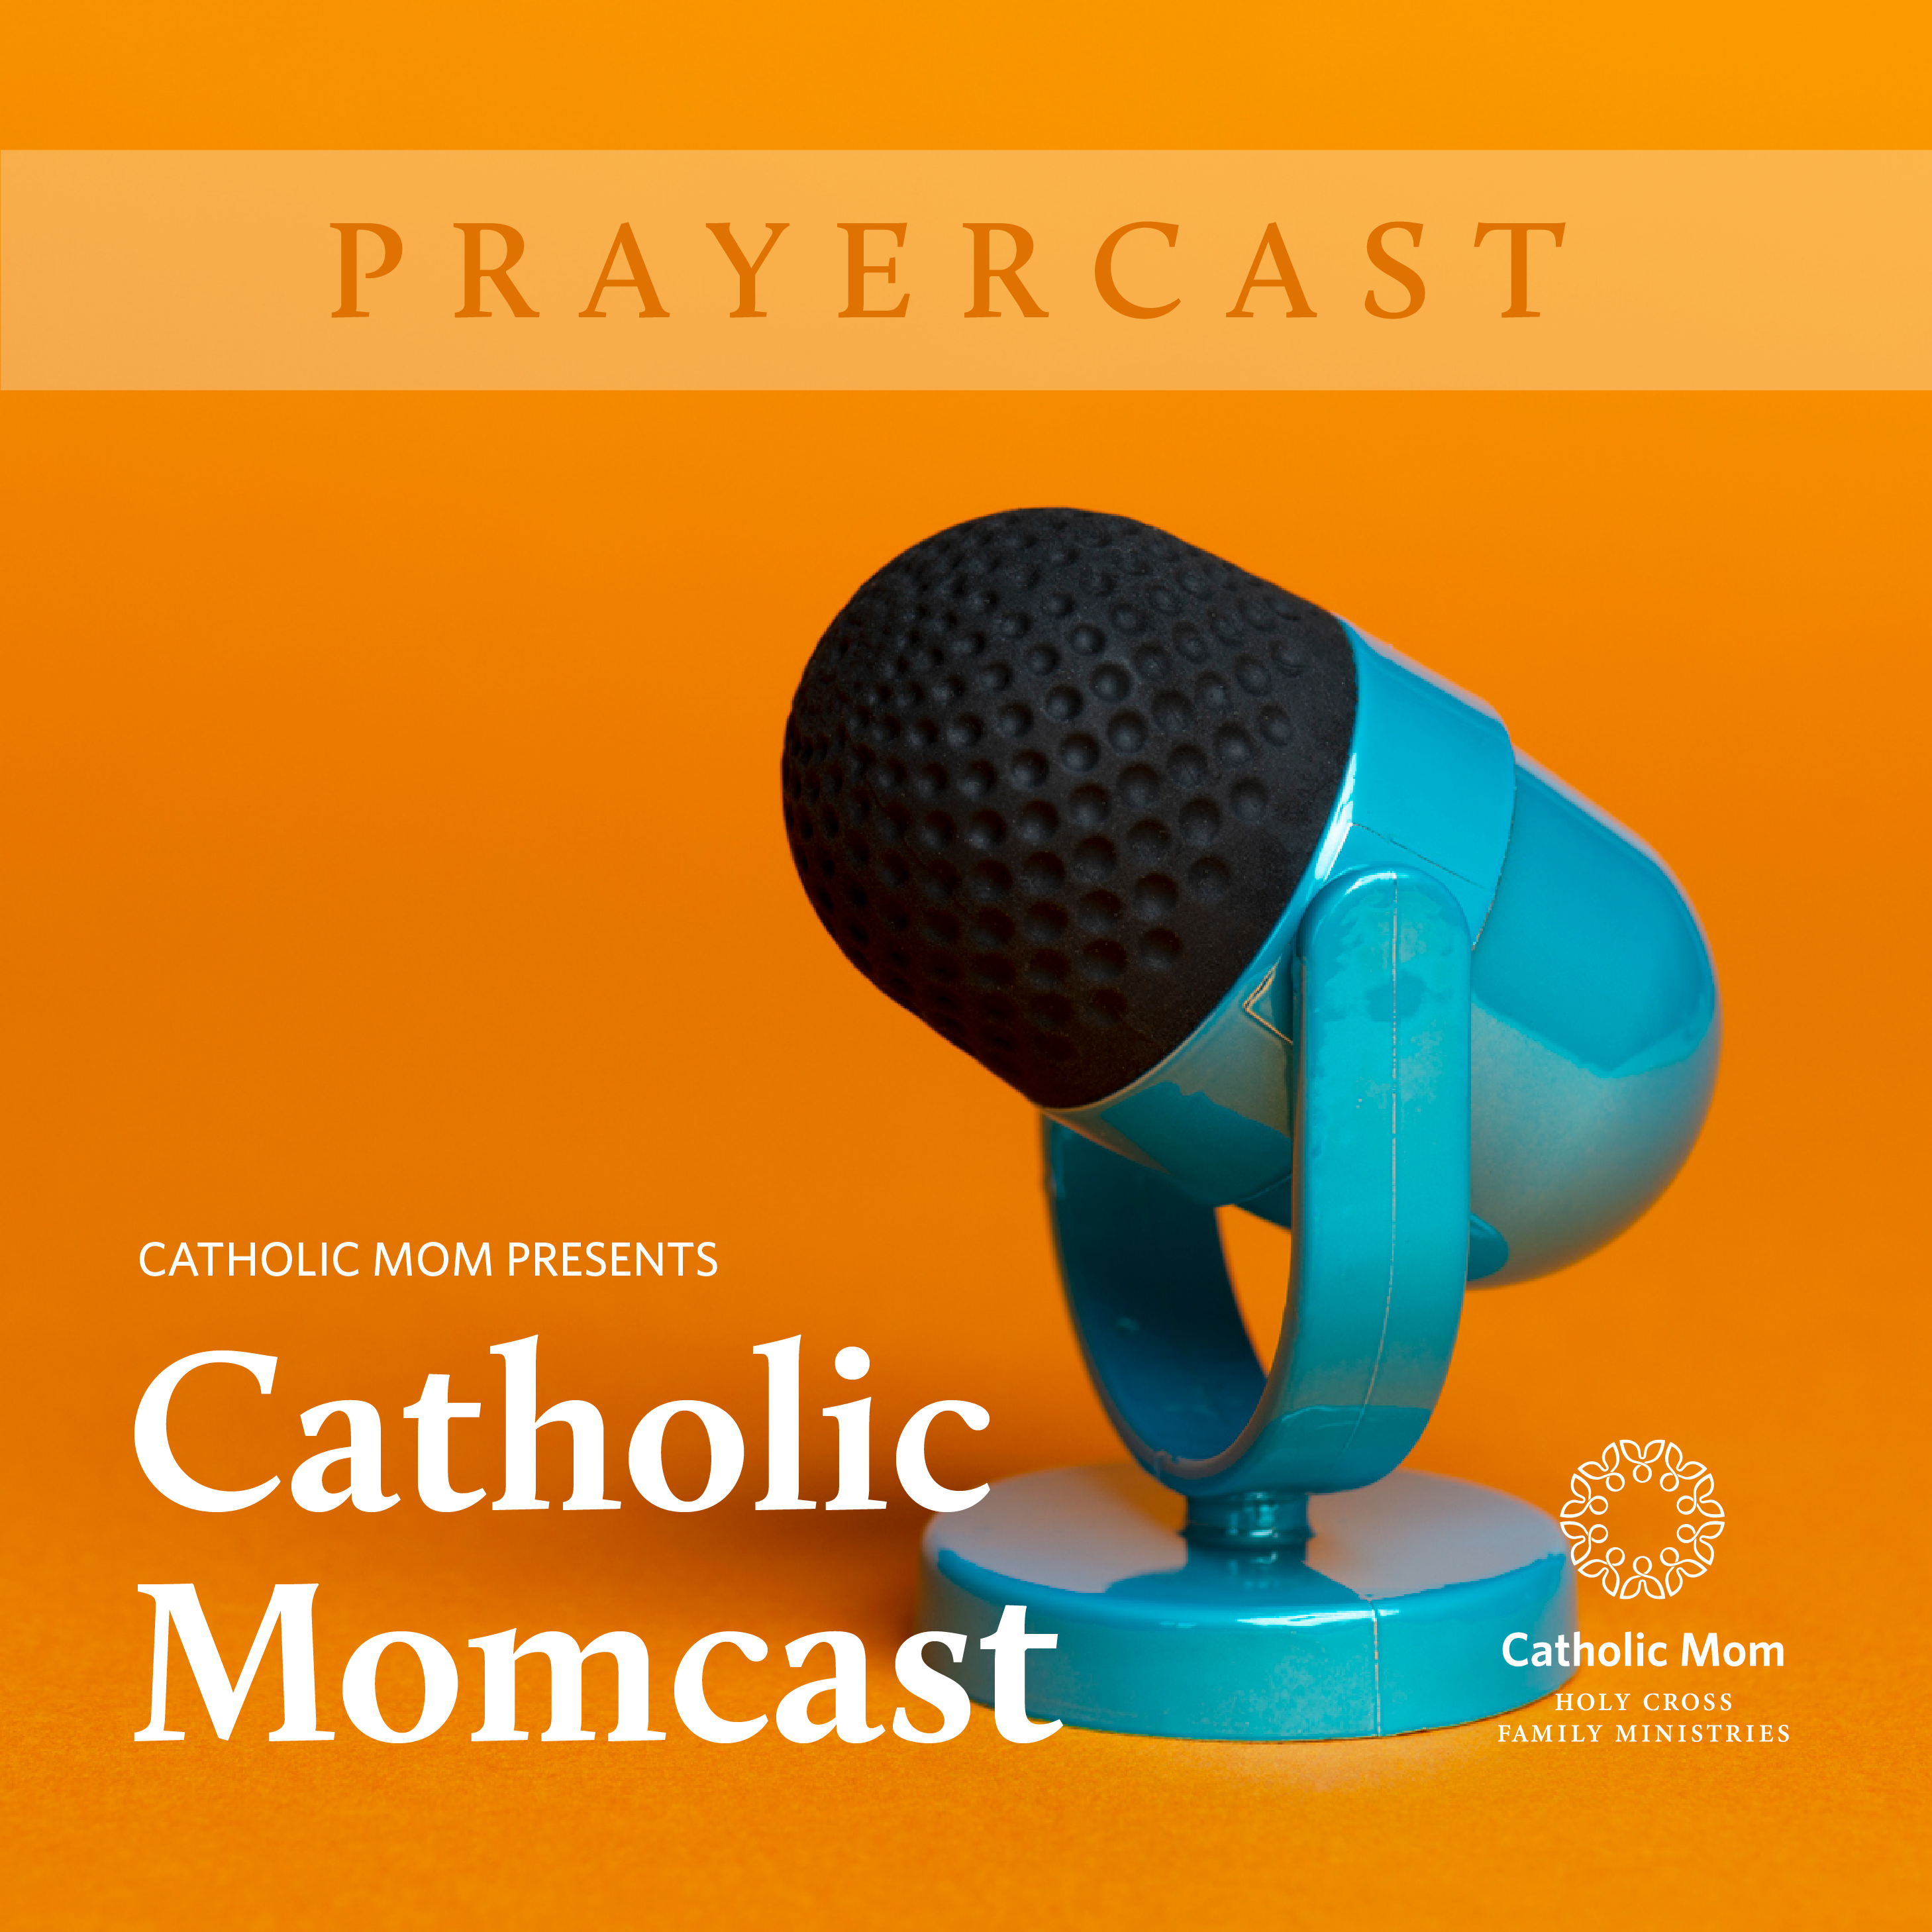 Prayer cast_Momcast